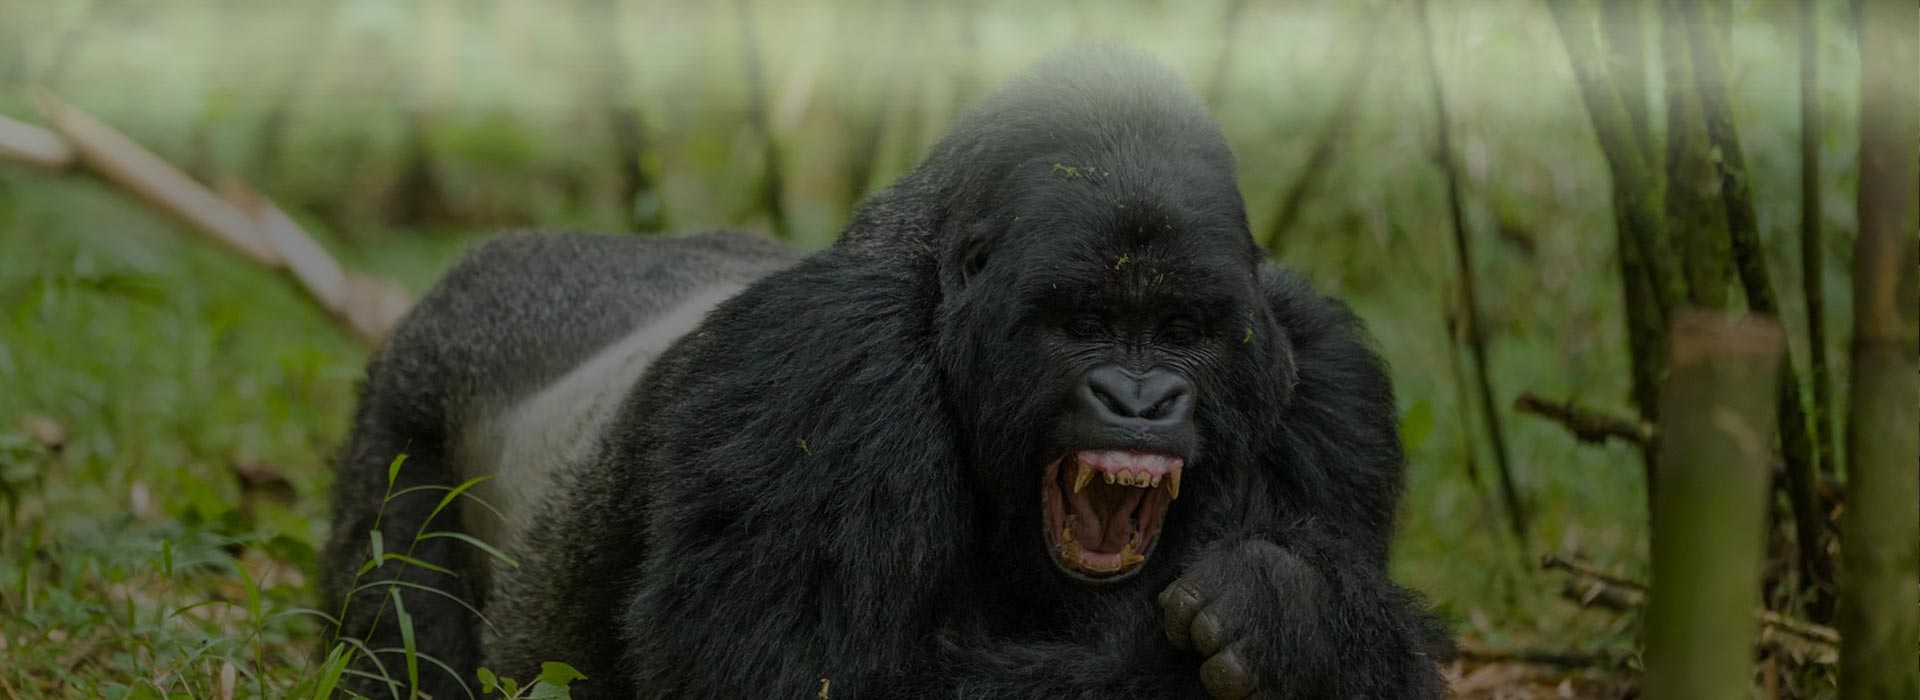 Uganda Gorillas Wildlife Safari